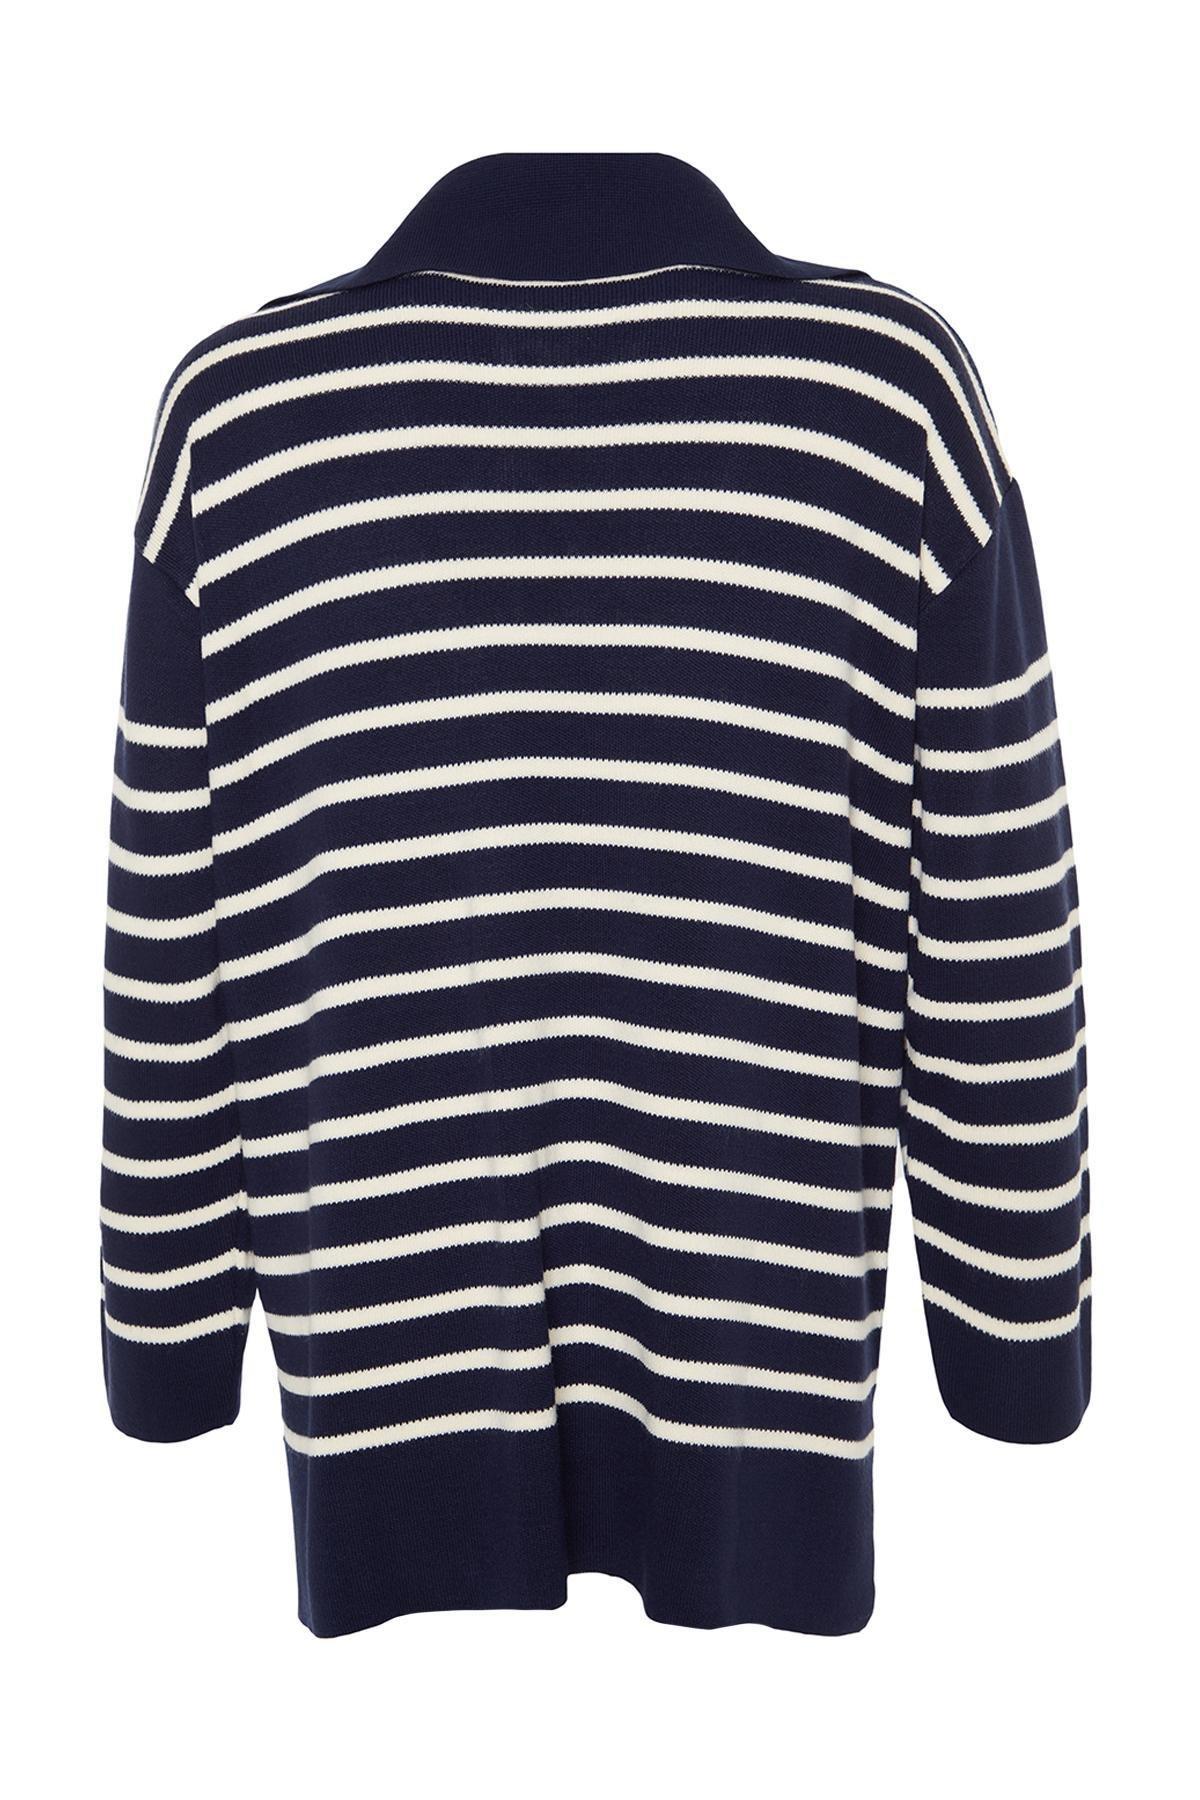 Trendyol - Navy Striped Knitwear Sweater<br>